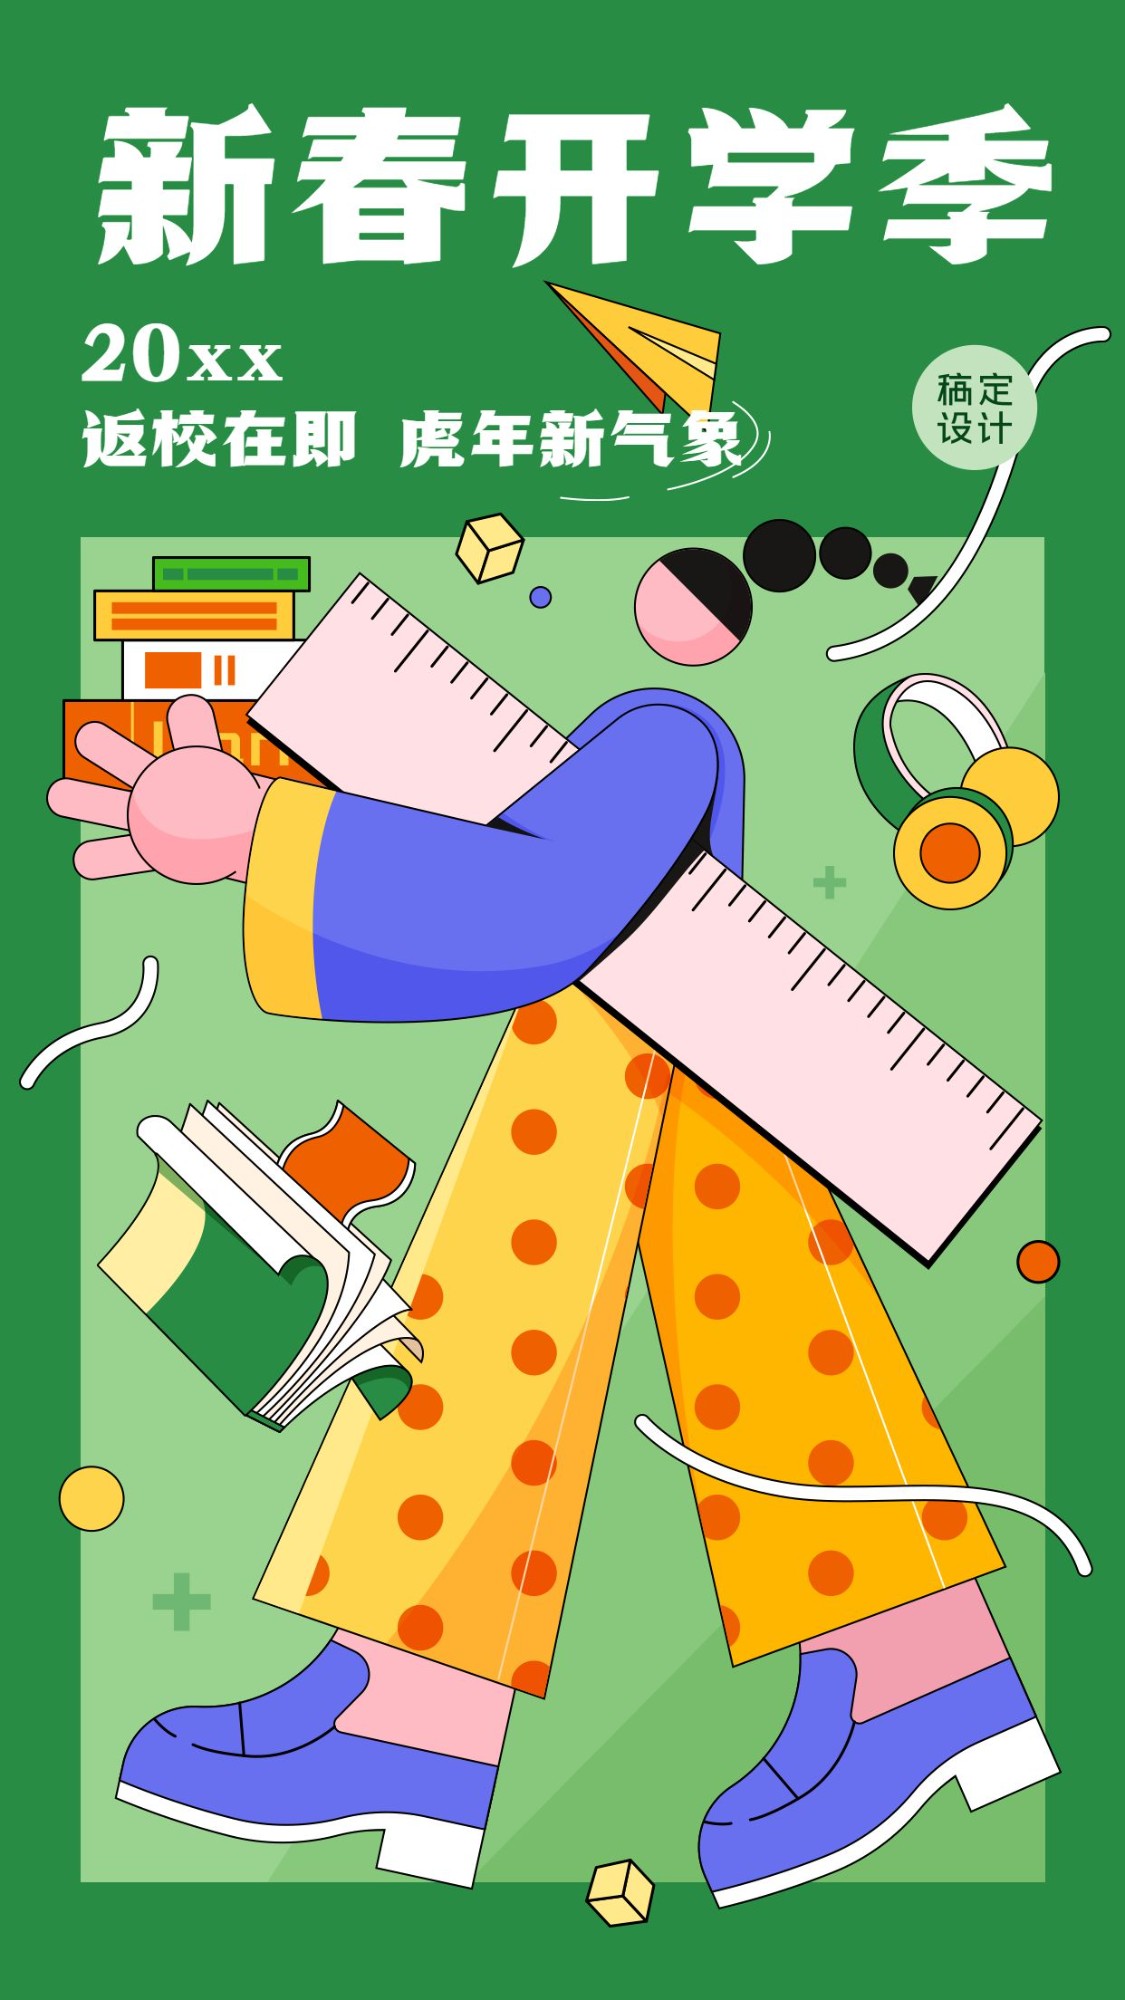 3月开学季节日祝福插画手机海报预览效果